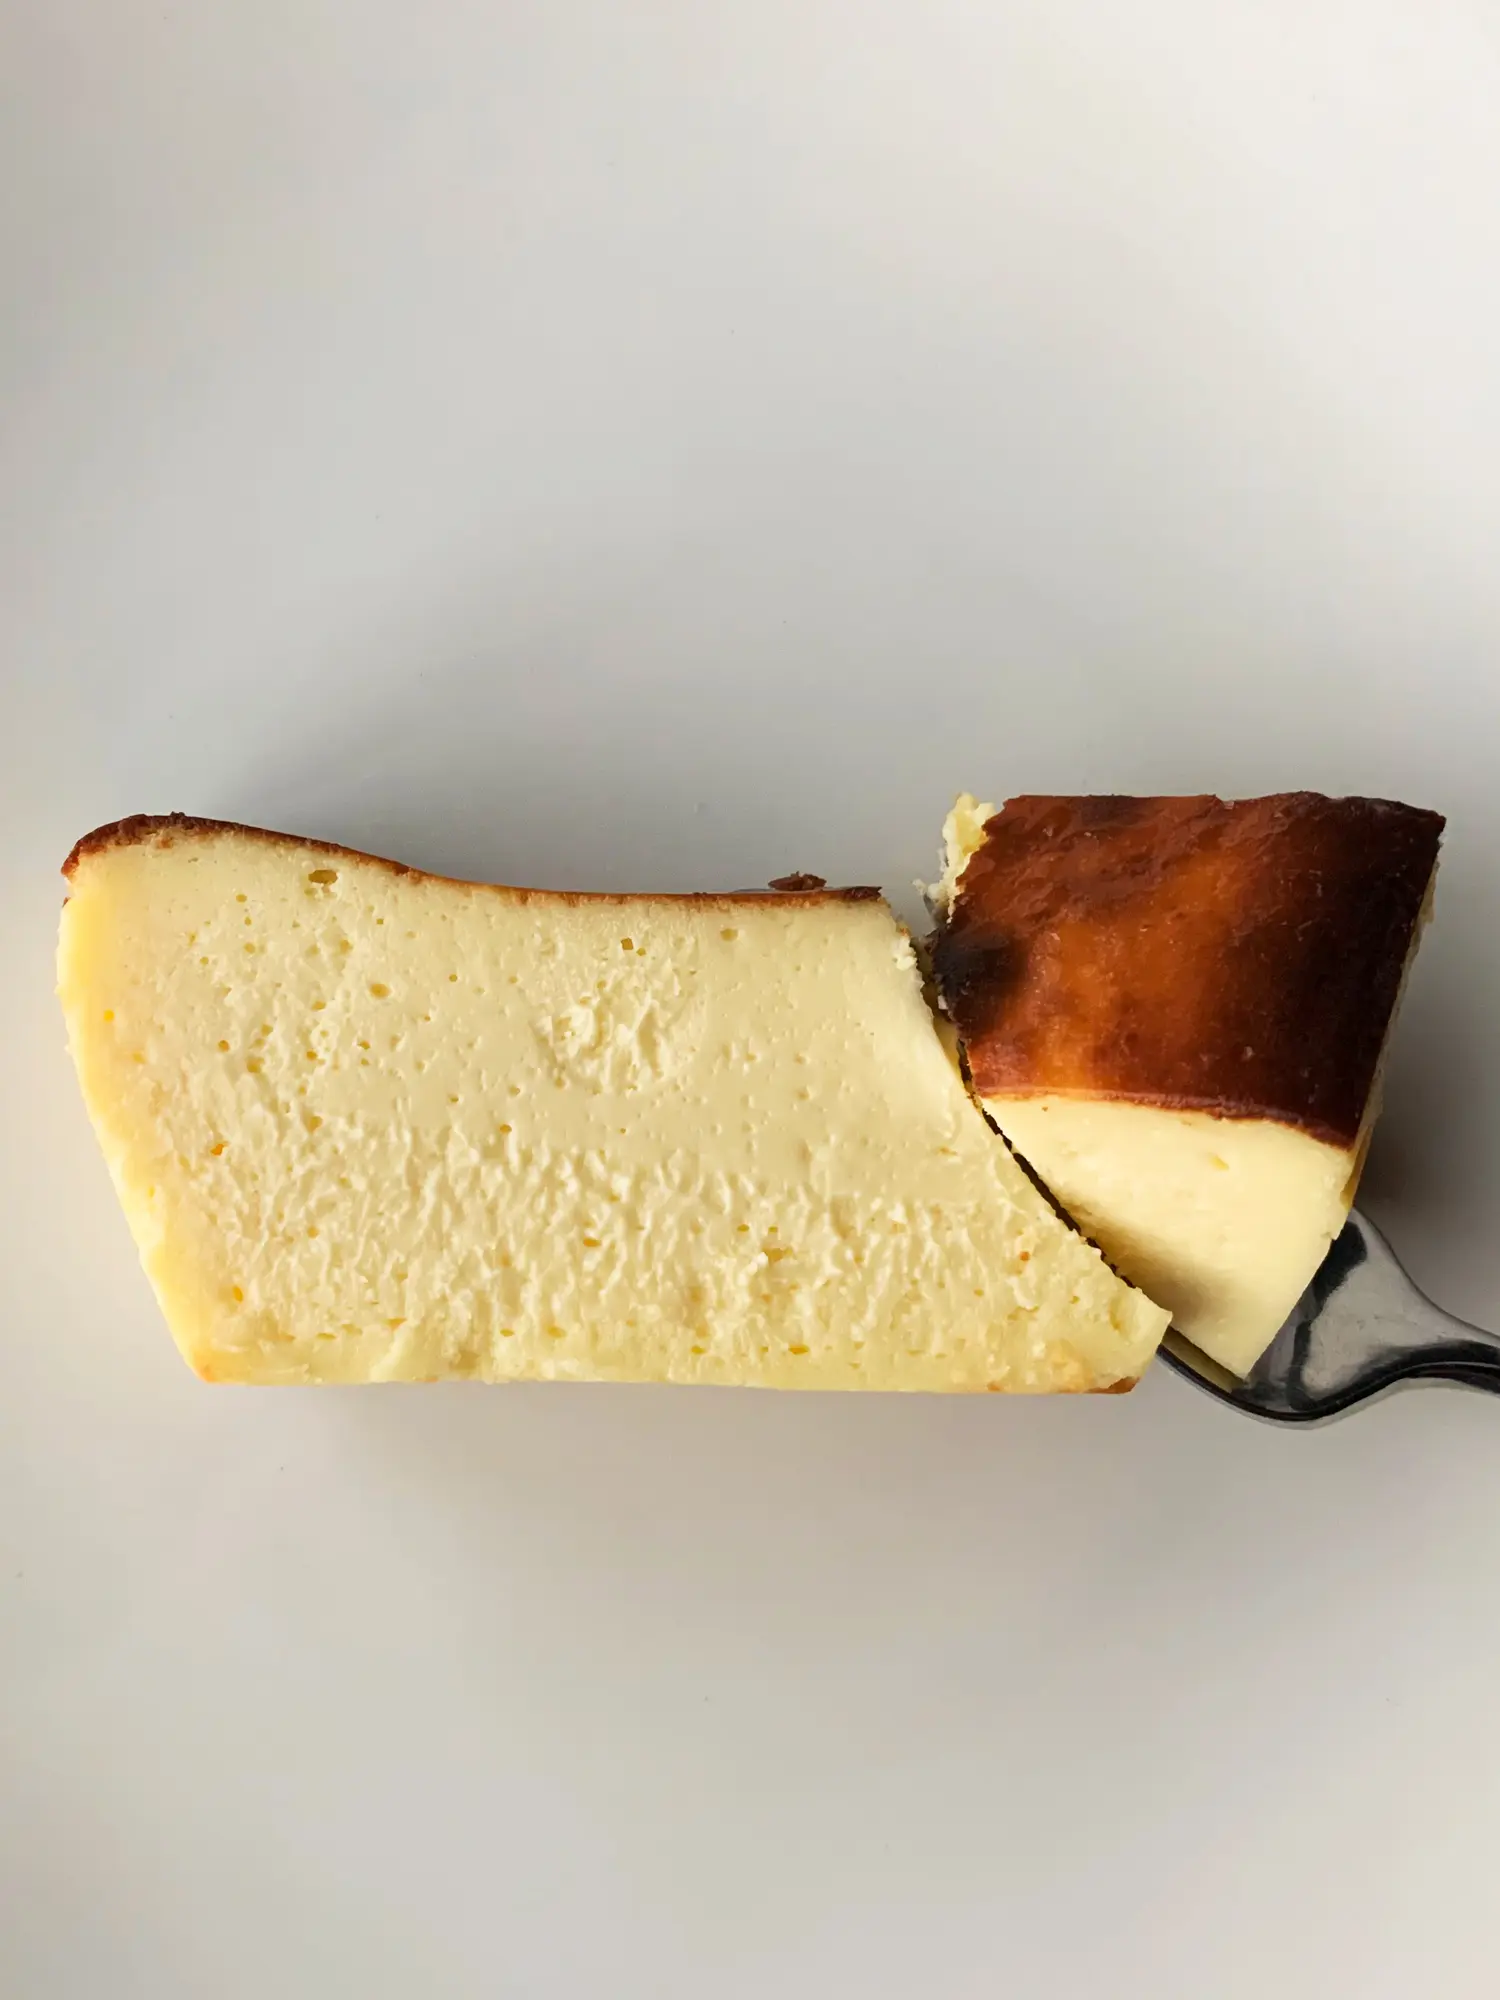 Cheese cake